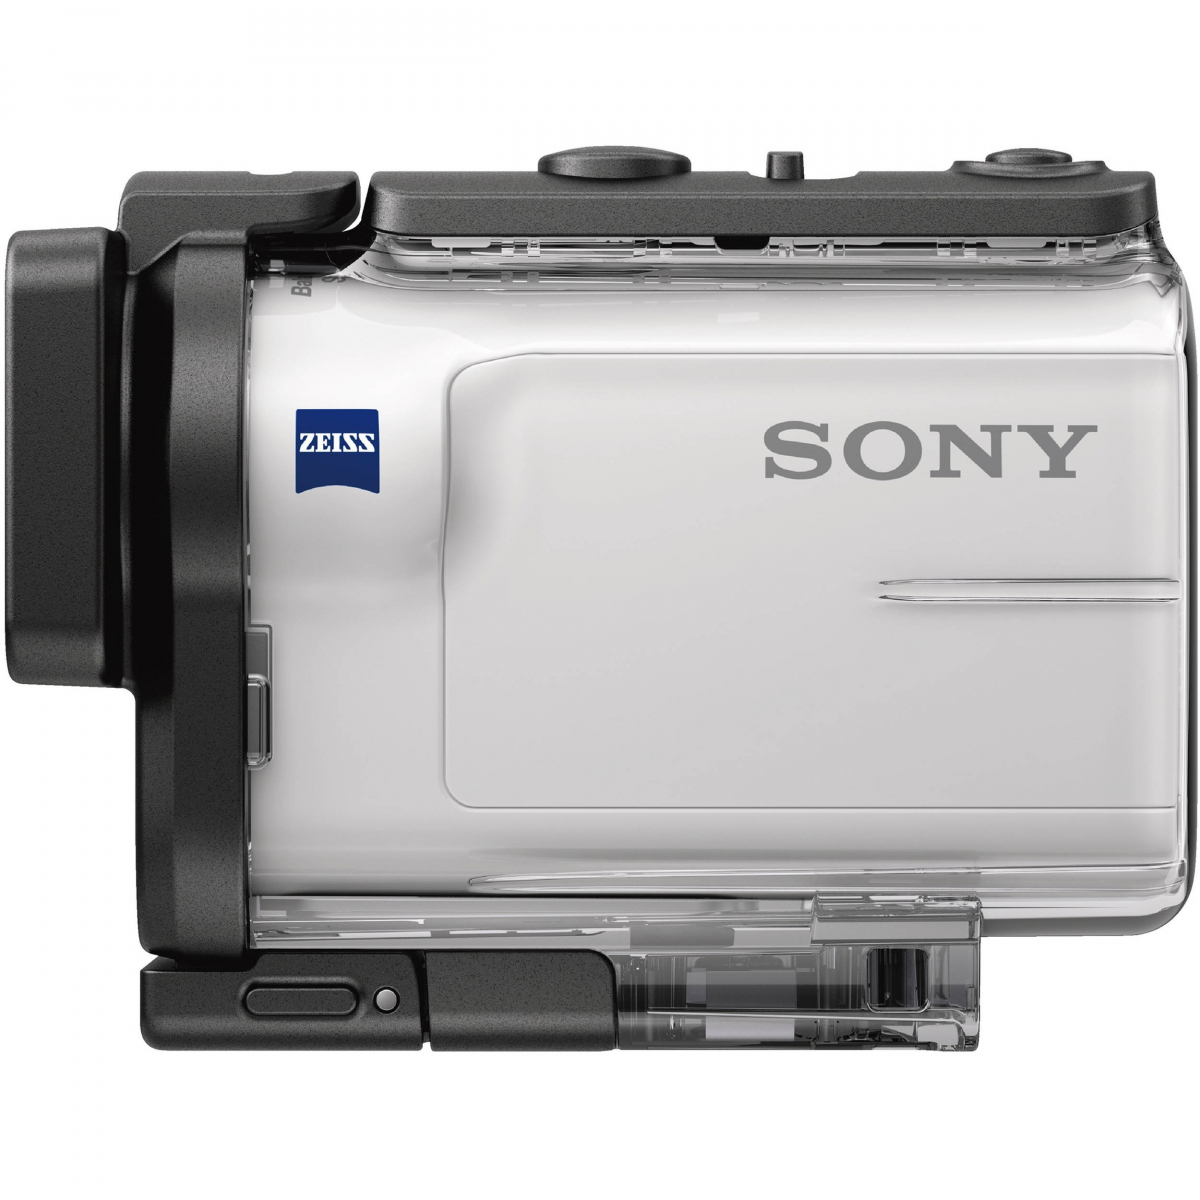 Цифр. видеокамера экстрим Sony HDR-AS300 c пультом д/у RM-LVR3